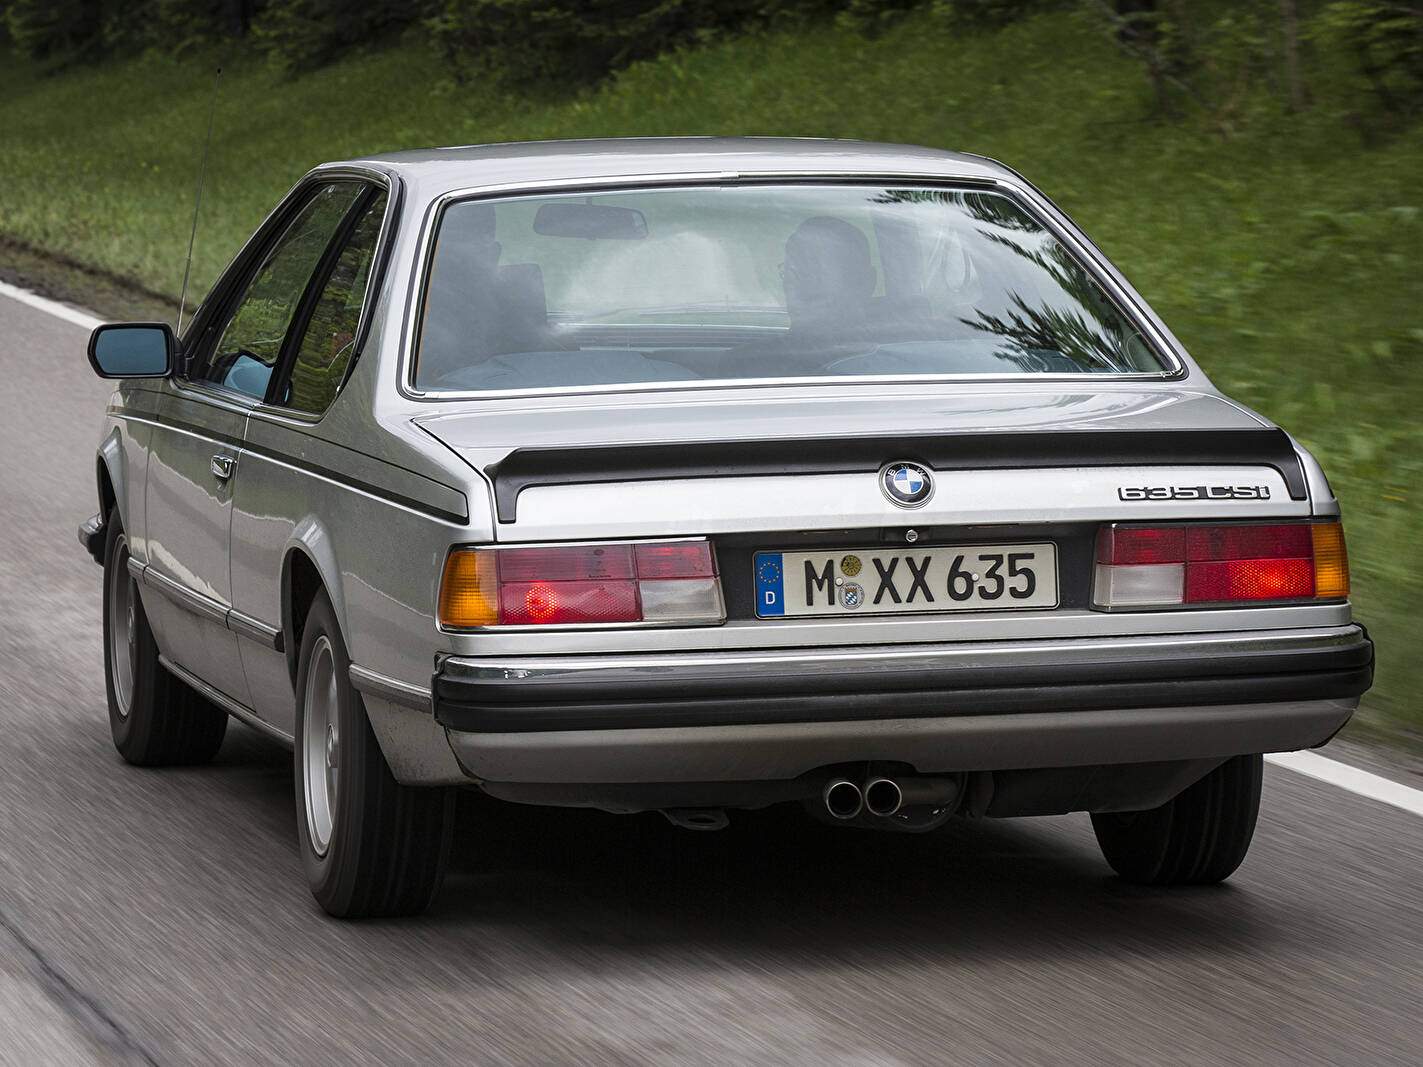 BMW 635Csi (E24) (1978-1989),  ajouté par fox58